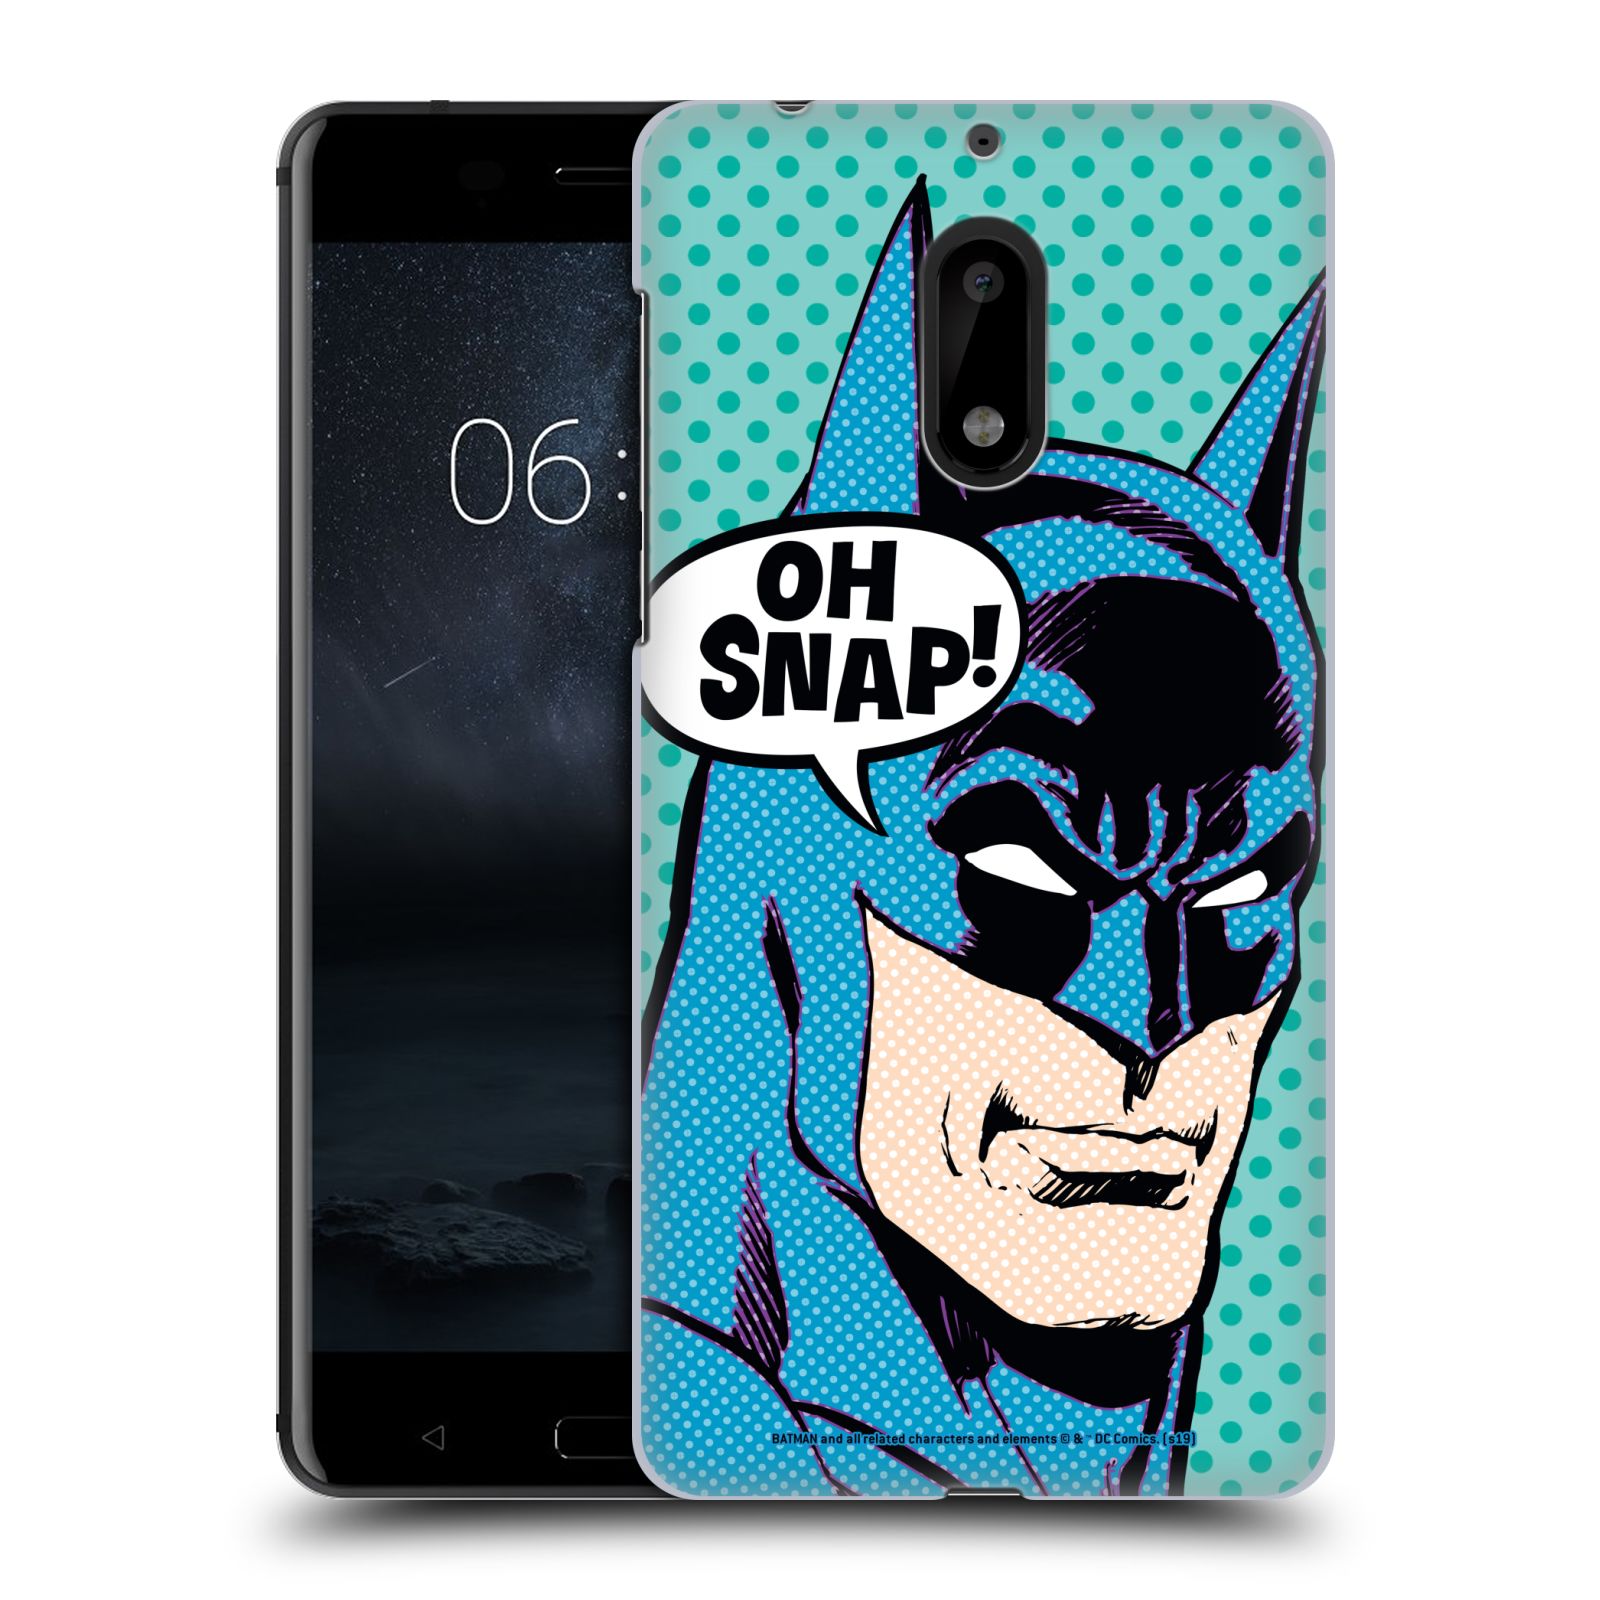 Pouzdro na mobil Nokia 6 - HEAD CASE - DC komix Batman Pop Art tvář